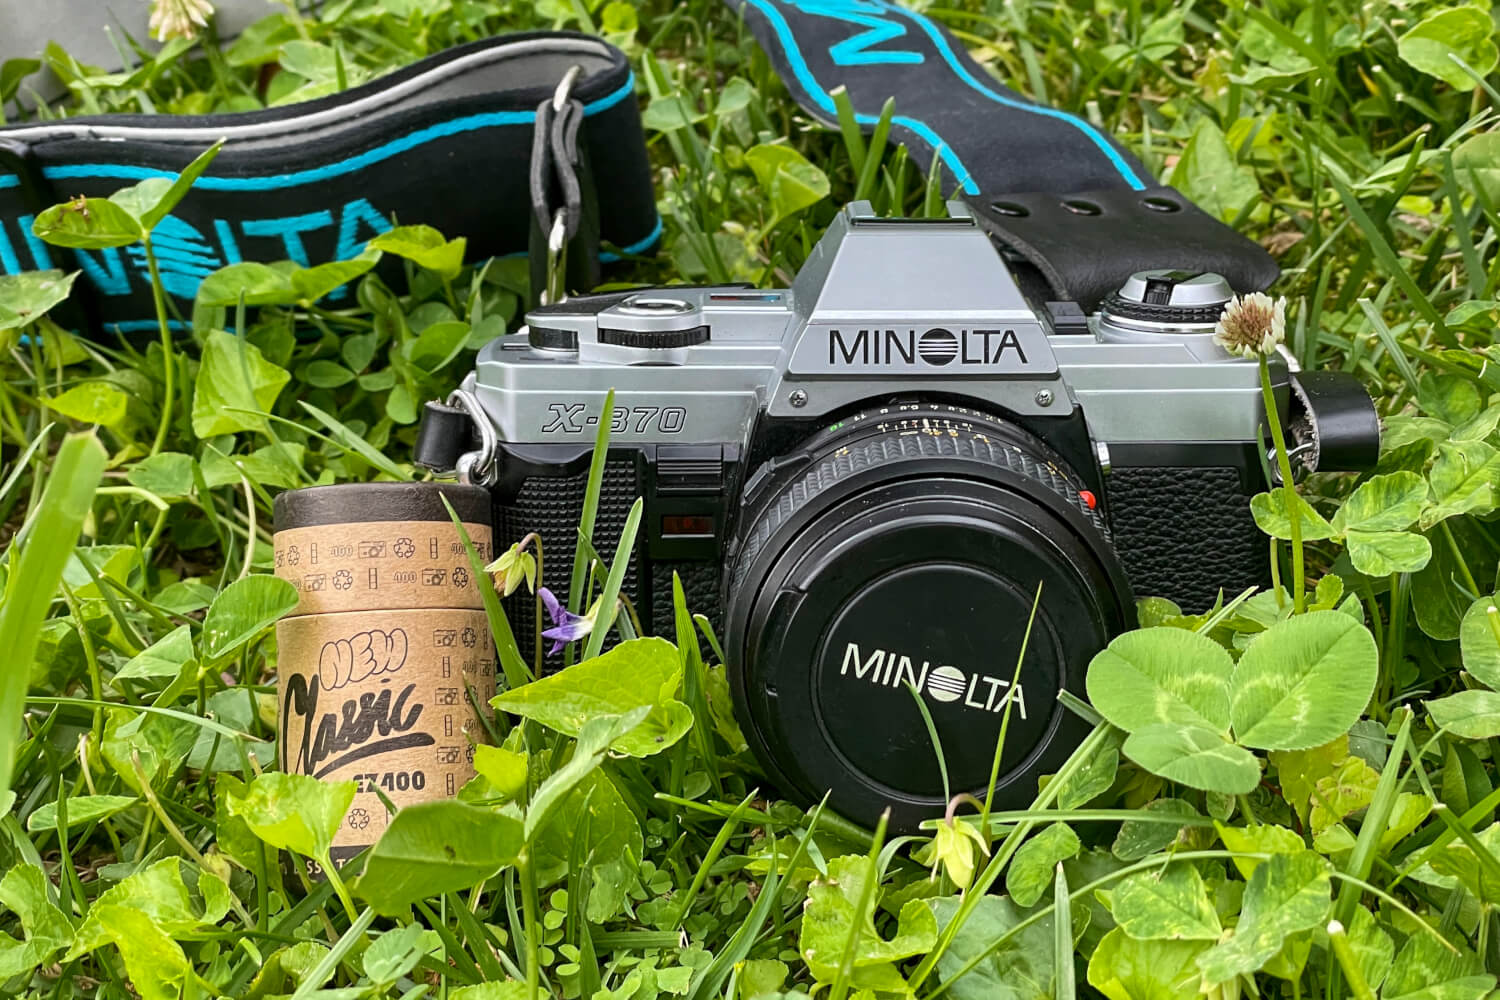 My Minolta X-370 + Minolta MD 50mm f/1.4, Jon Woodhams